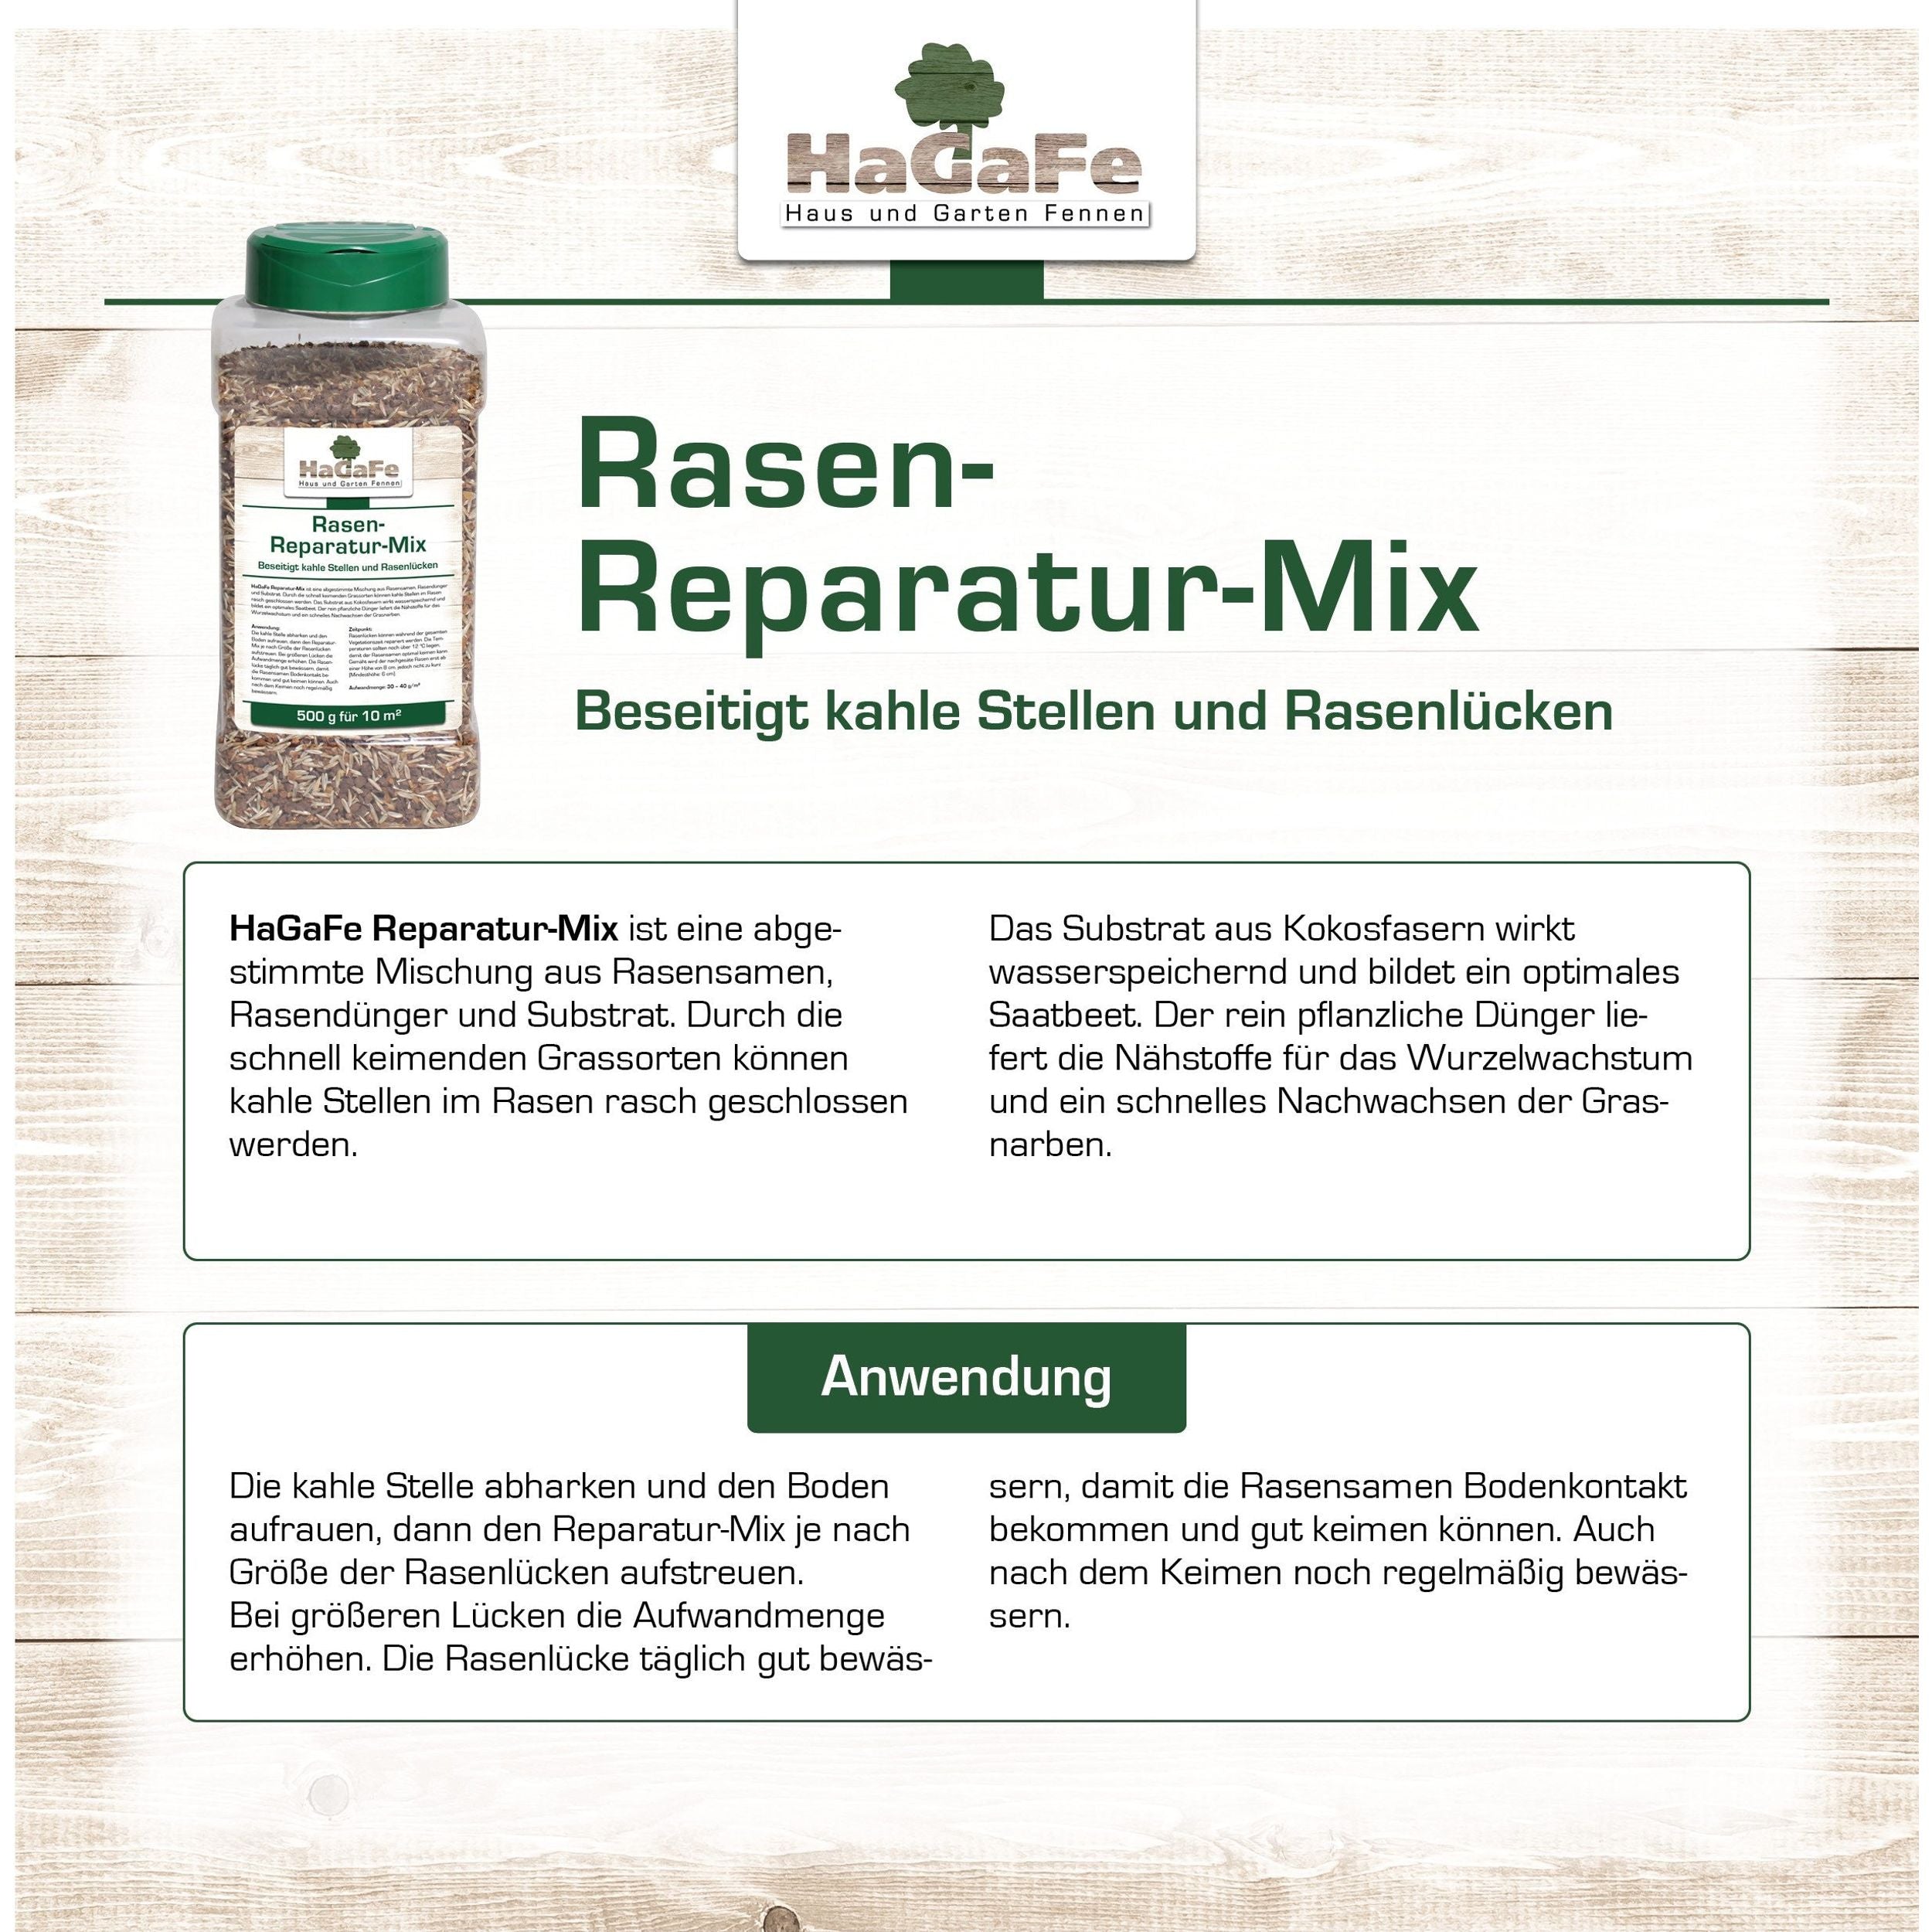 HaGaFe Rasen - Reparatur - Mix